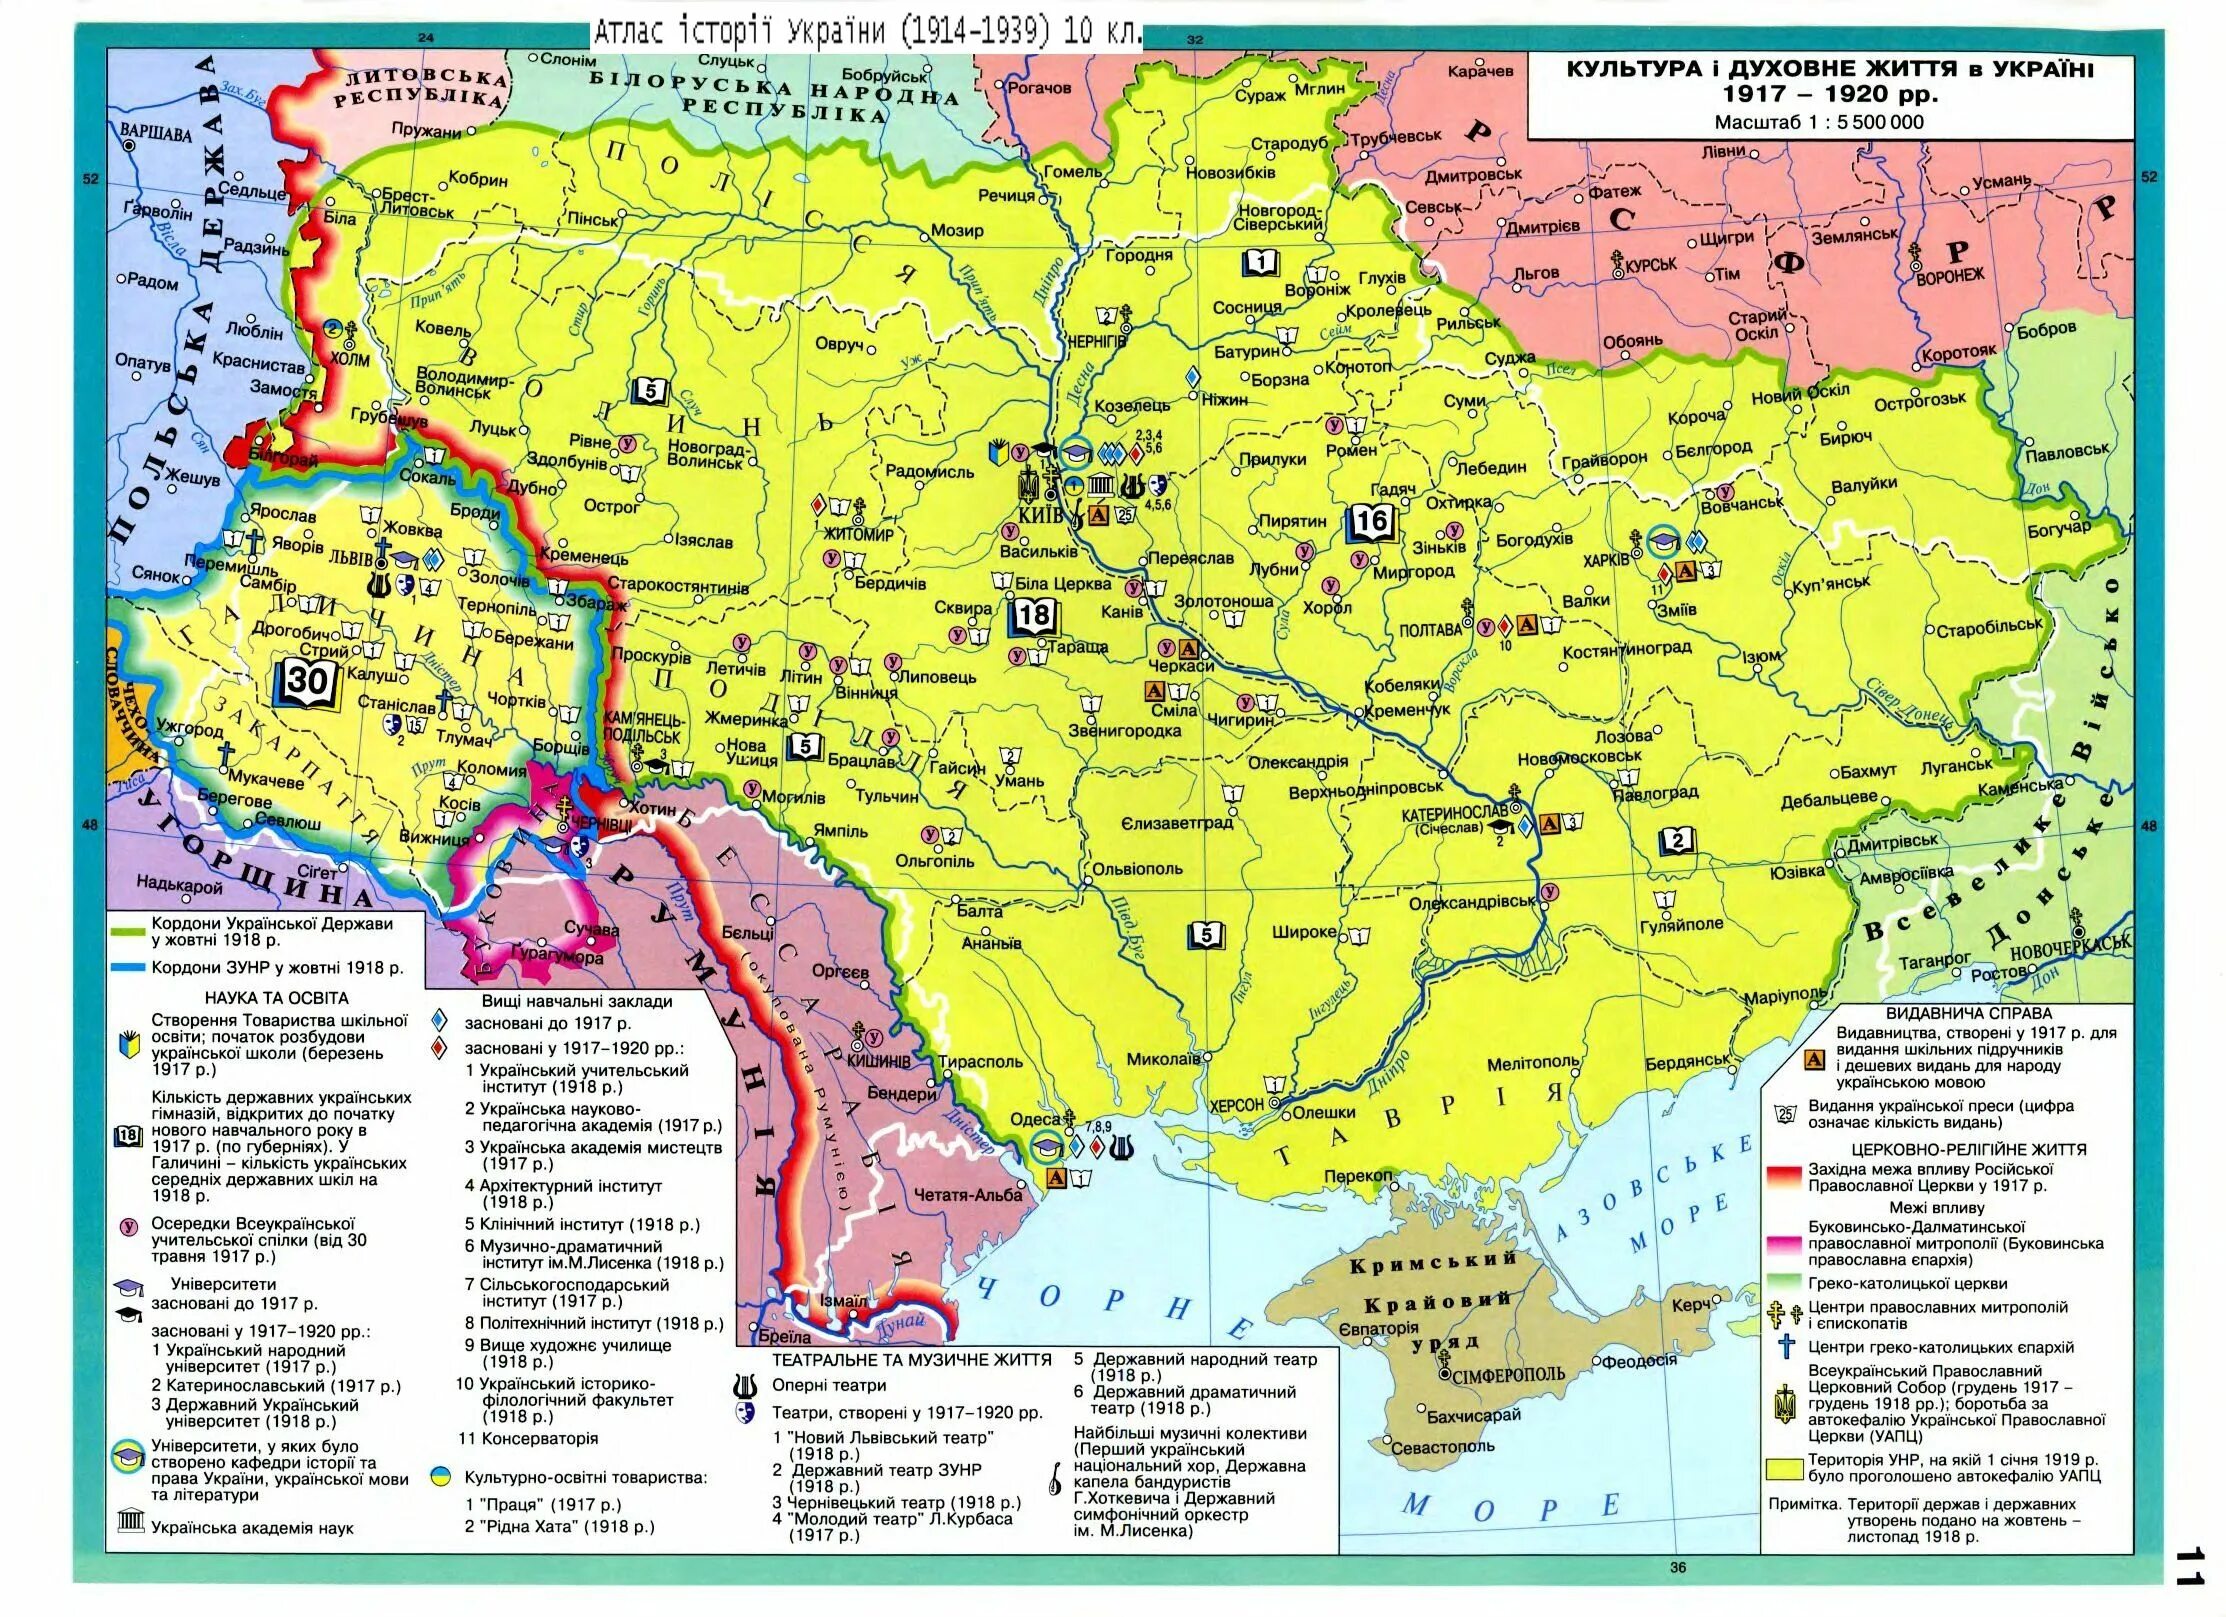 Территория украинской ссср. Границы Украины в 1918 году на карте. Украина до революции 1917 года карта. Карта украинской Республики 1918 года. Карта Украины 1918 года историческая.